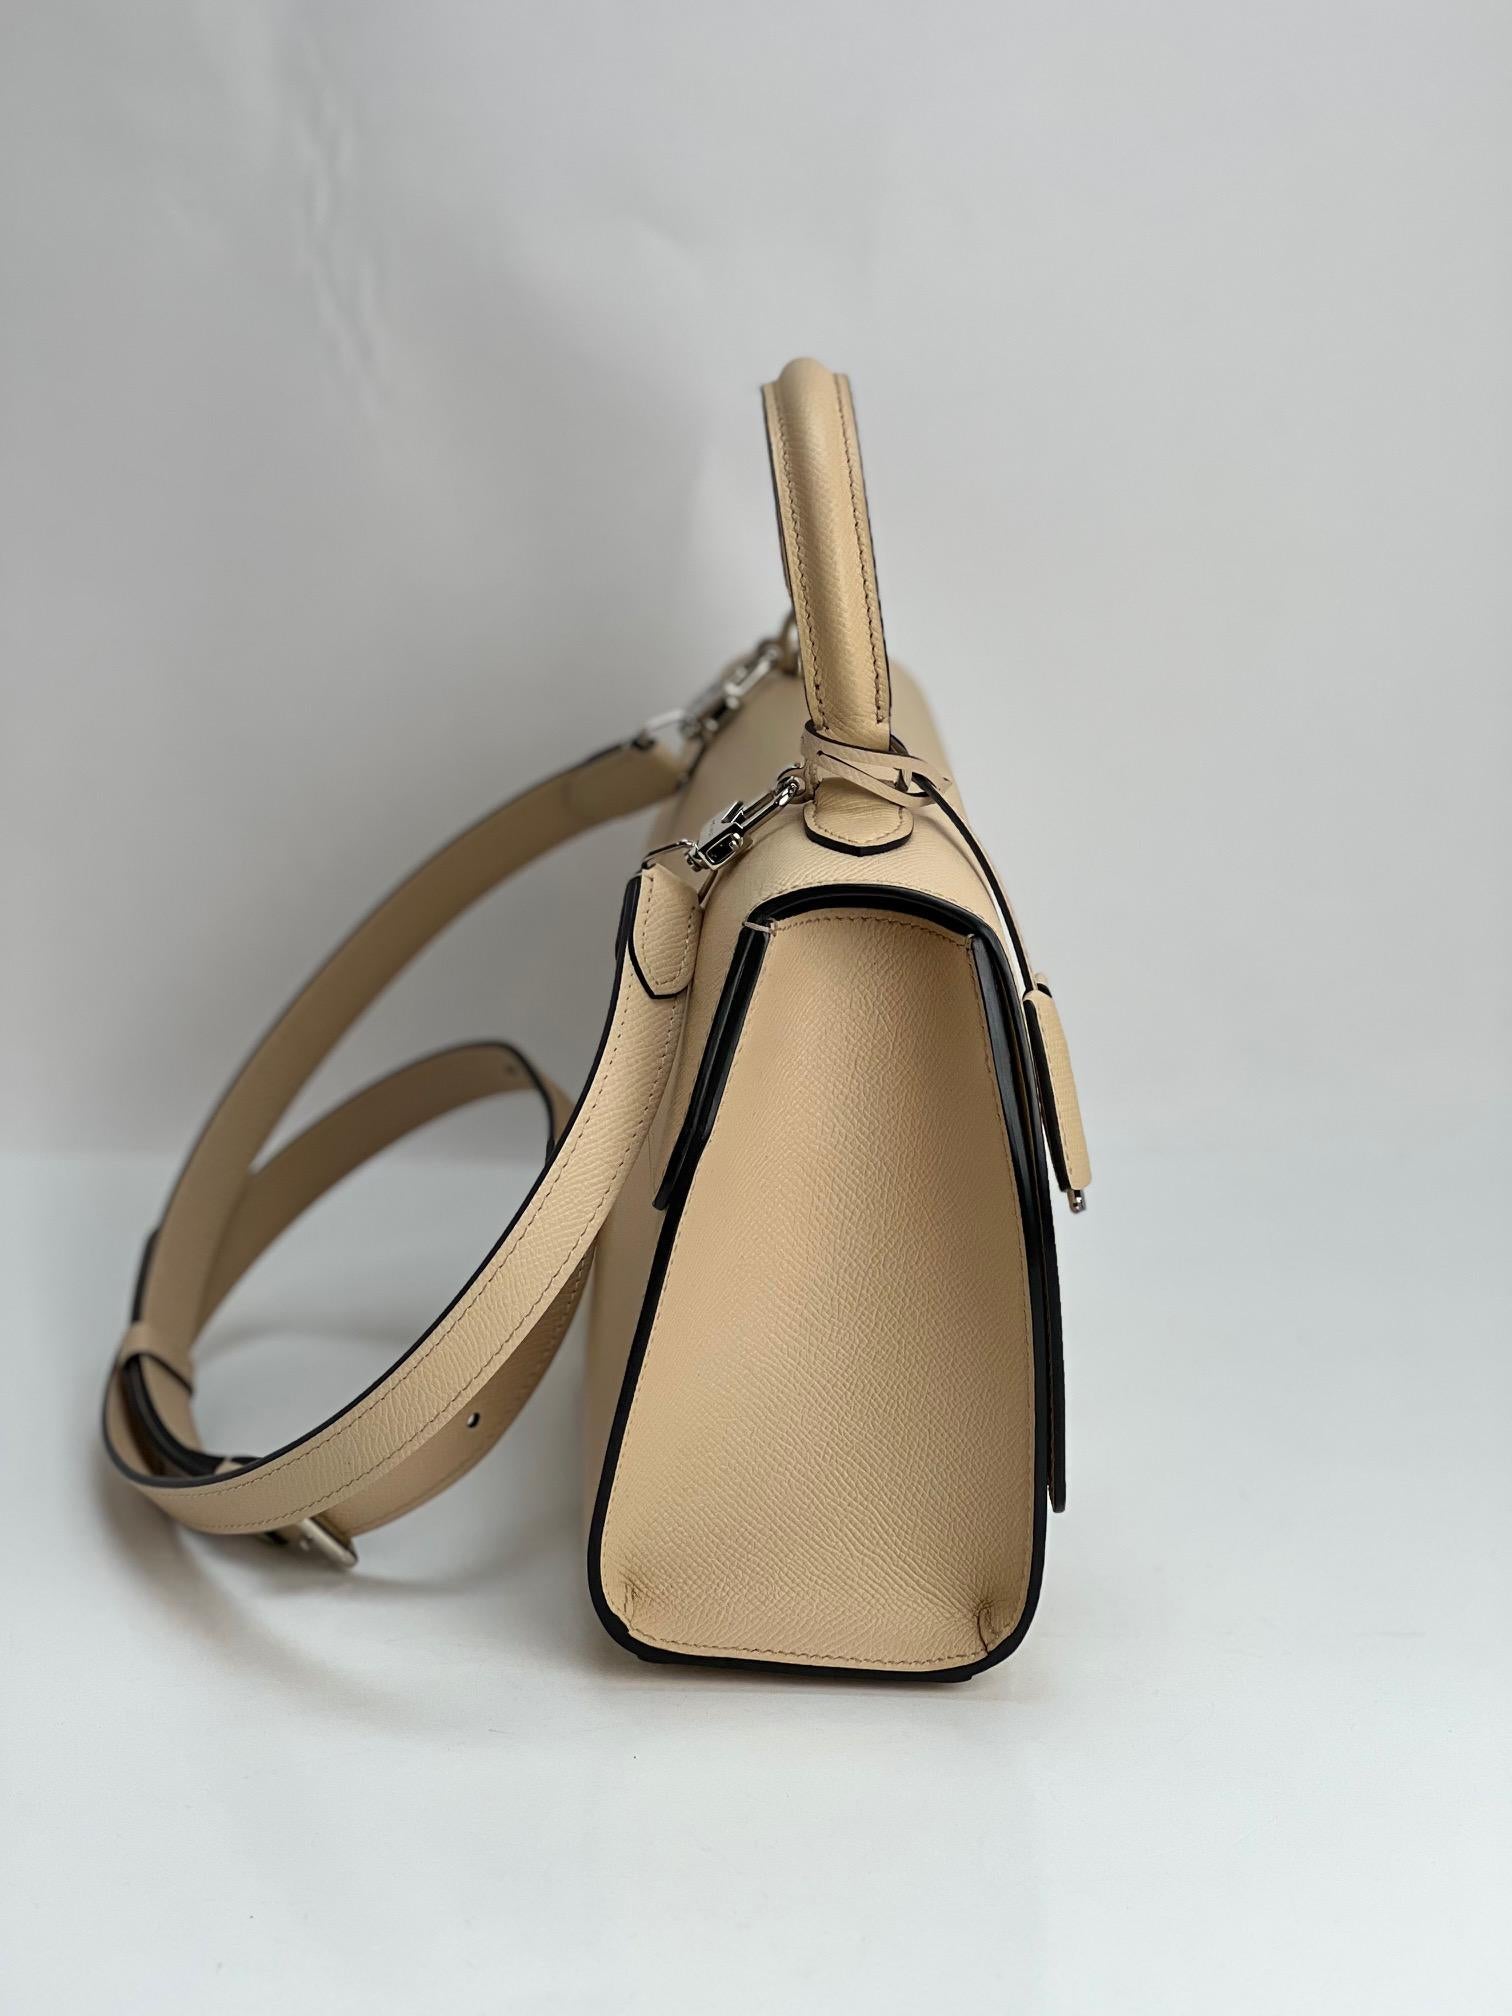 Moynat Carat Calfskin Rejane PM Hand Bag For Sale 3